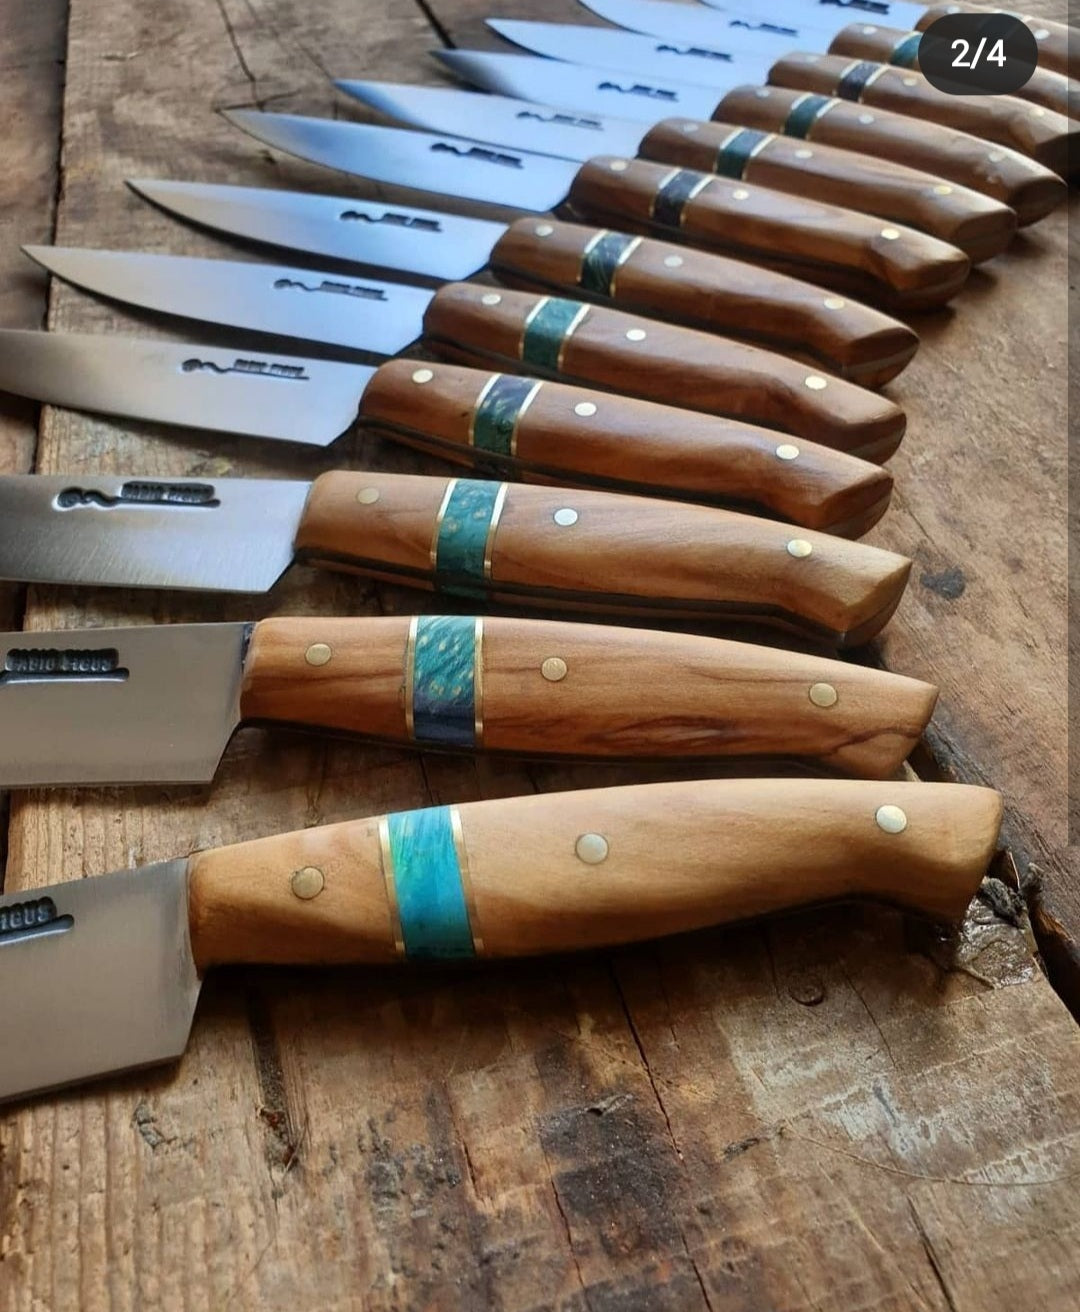 12 steak knives